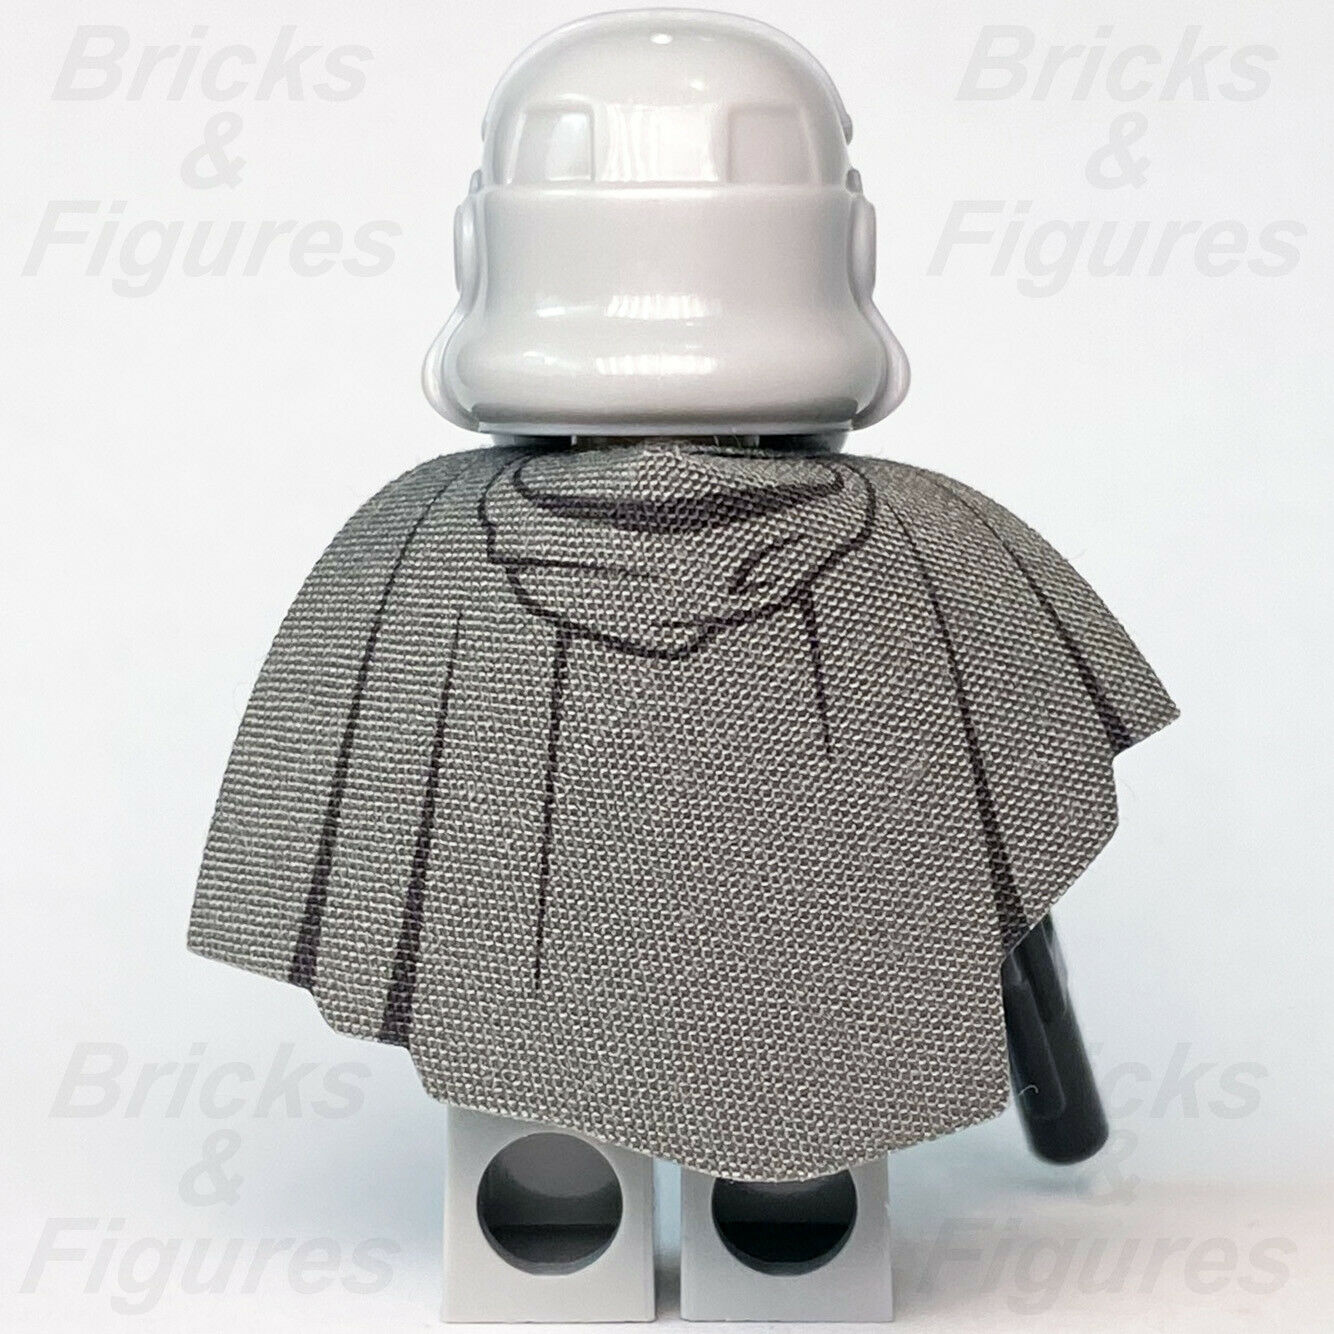 New Star Wars LEGO Mimban Stormtrooper Minifigure Solo Trooper Sw0927 75211 - Bricks & Figures